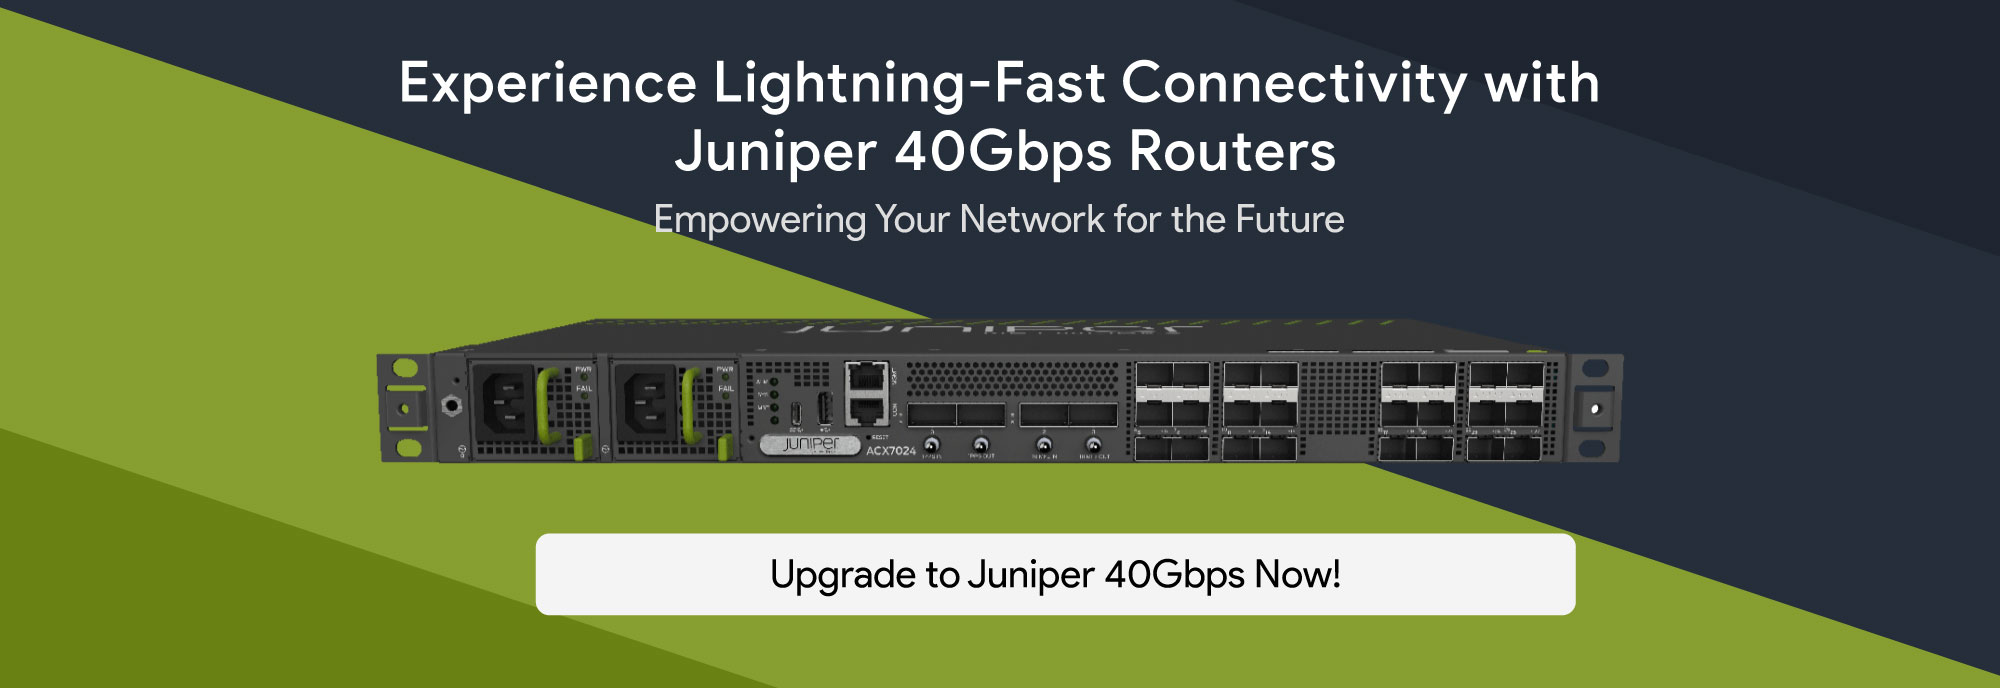 Juniper-40GBps-Router